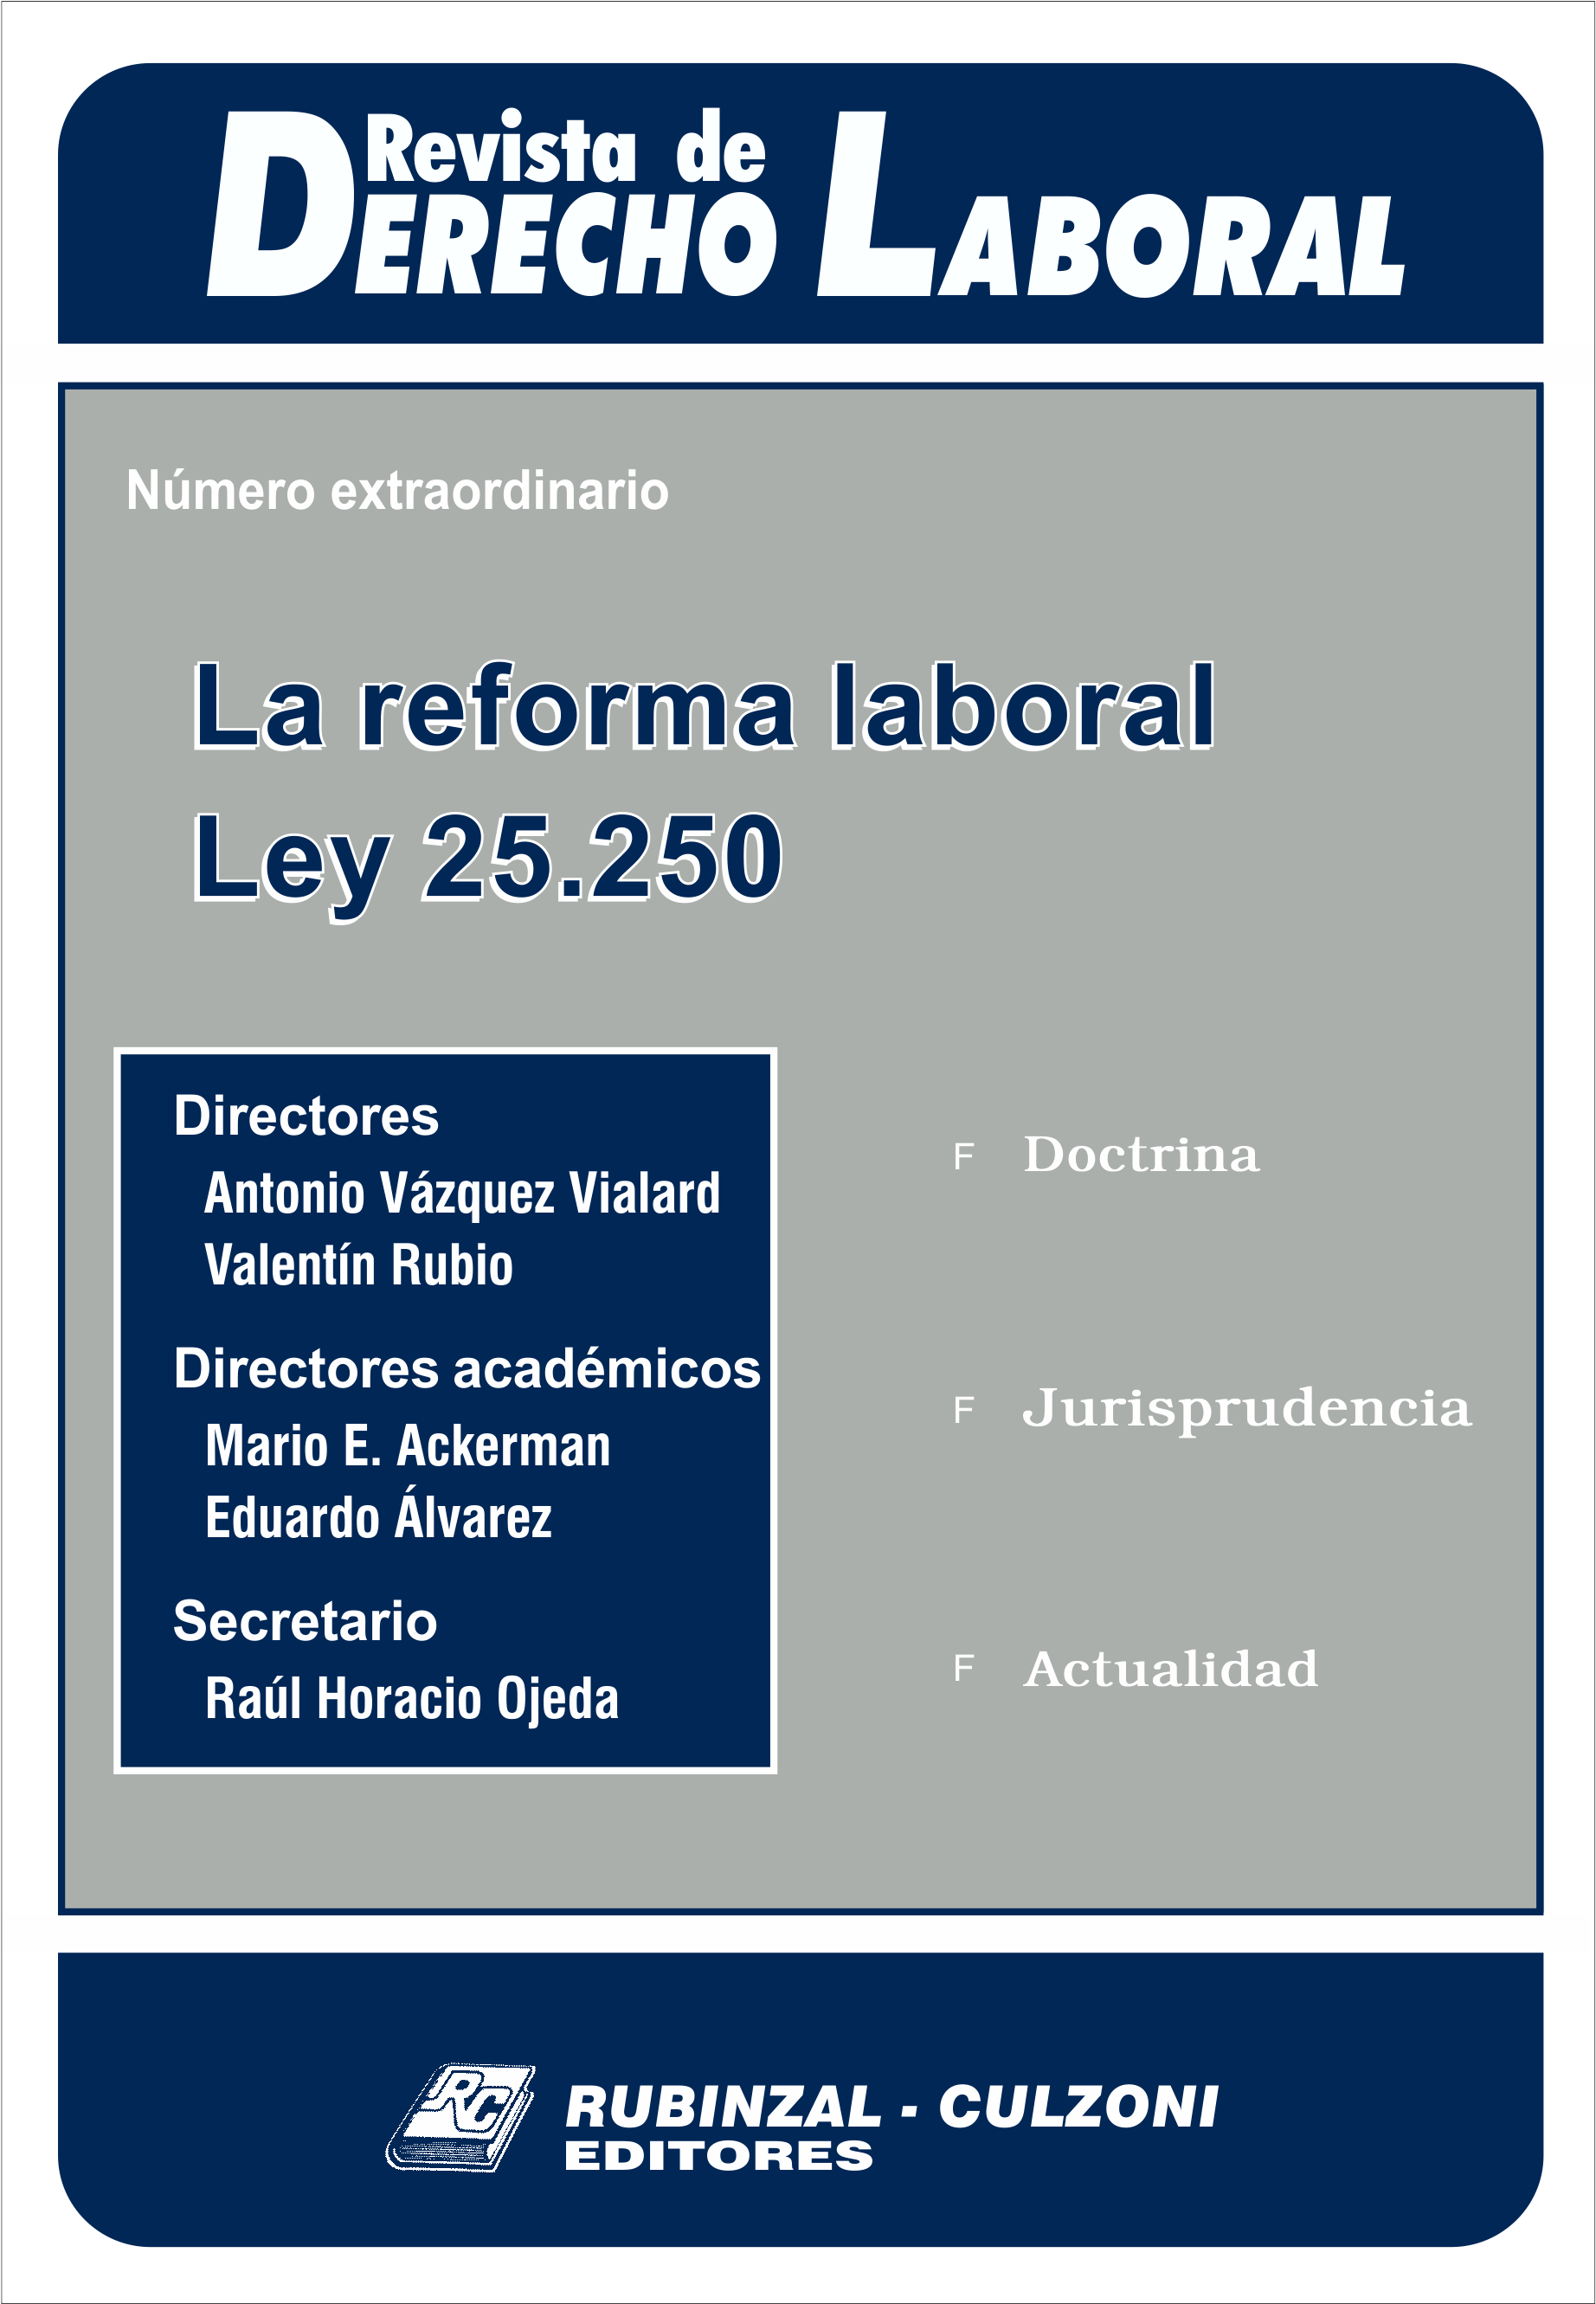 Revista de Derecho Laboral - Número extraordinario. La reforma laboral. Ley 25.250